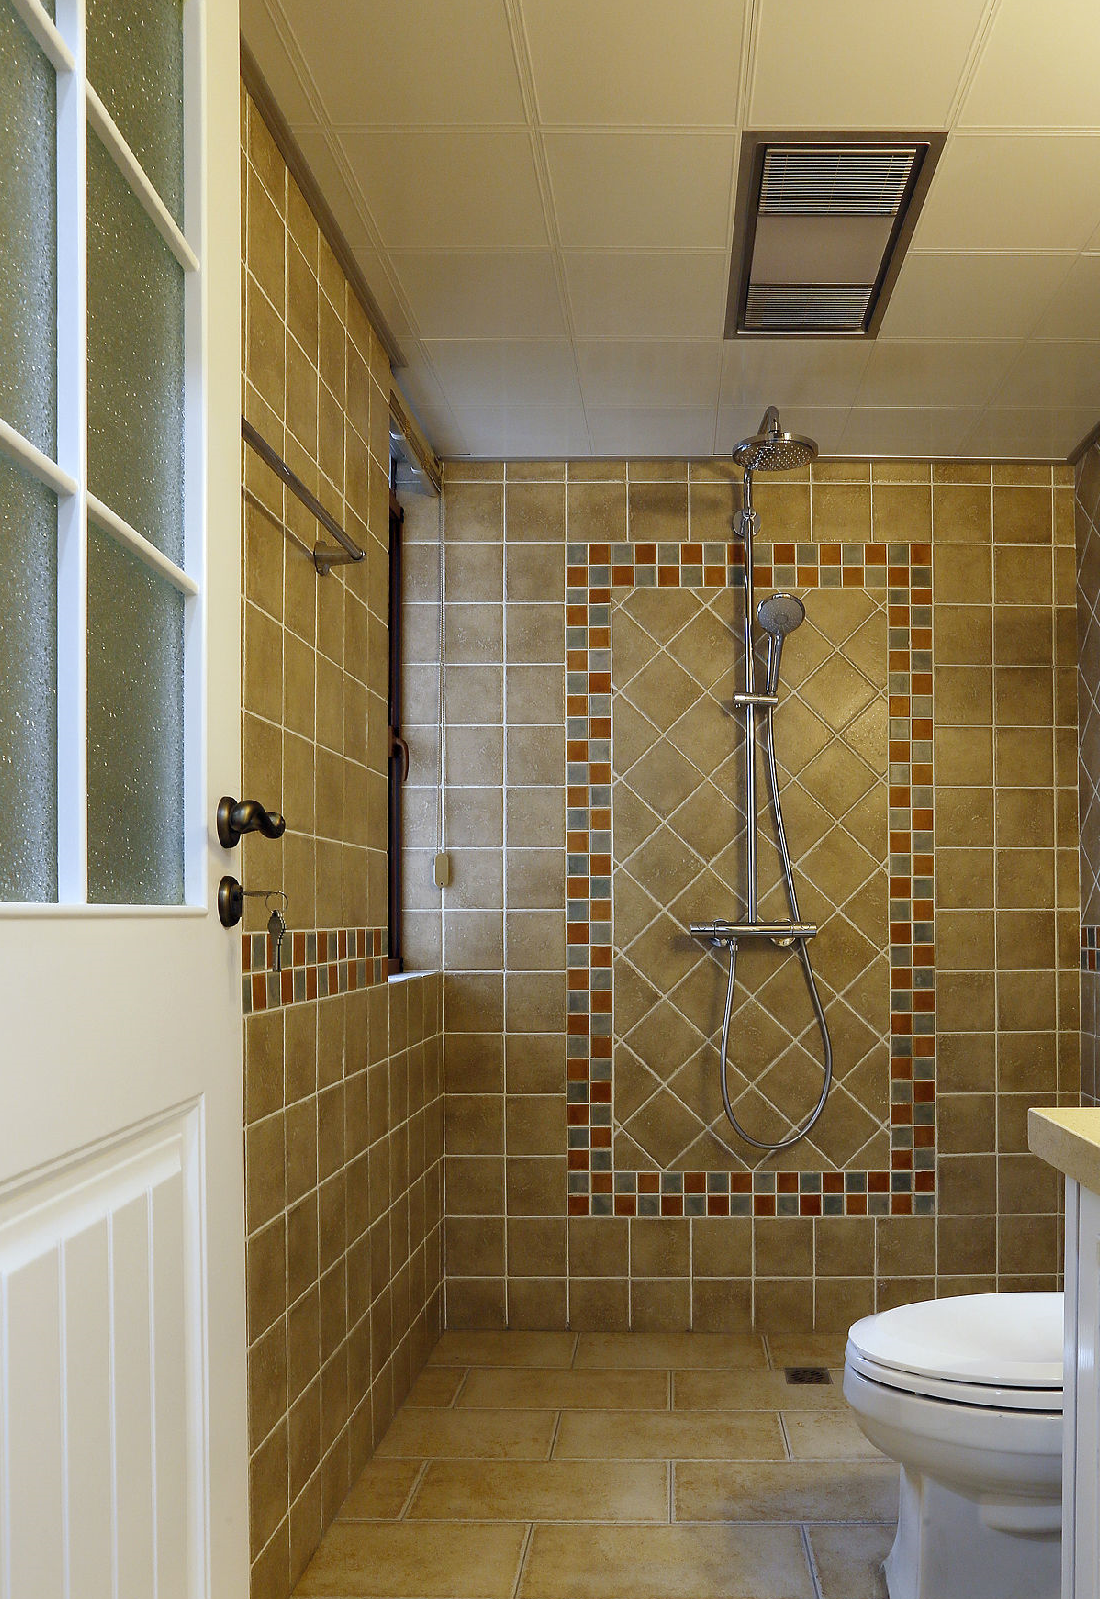 最后晒晒卫生间,厨房浴室地砖墙砖很有质感很漂亮,长谷牌的瓷砖书柜是